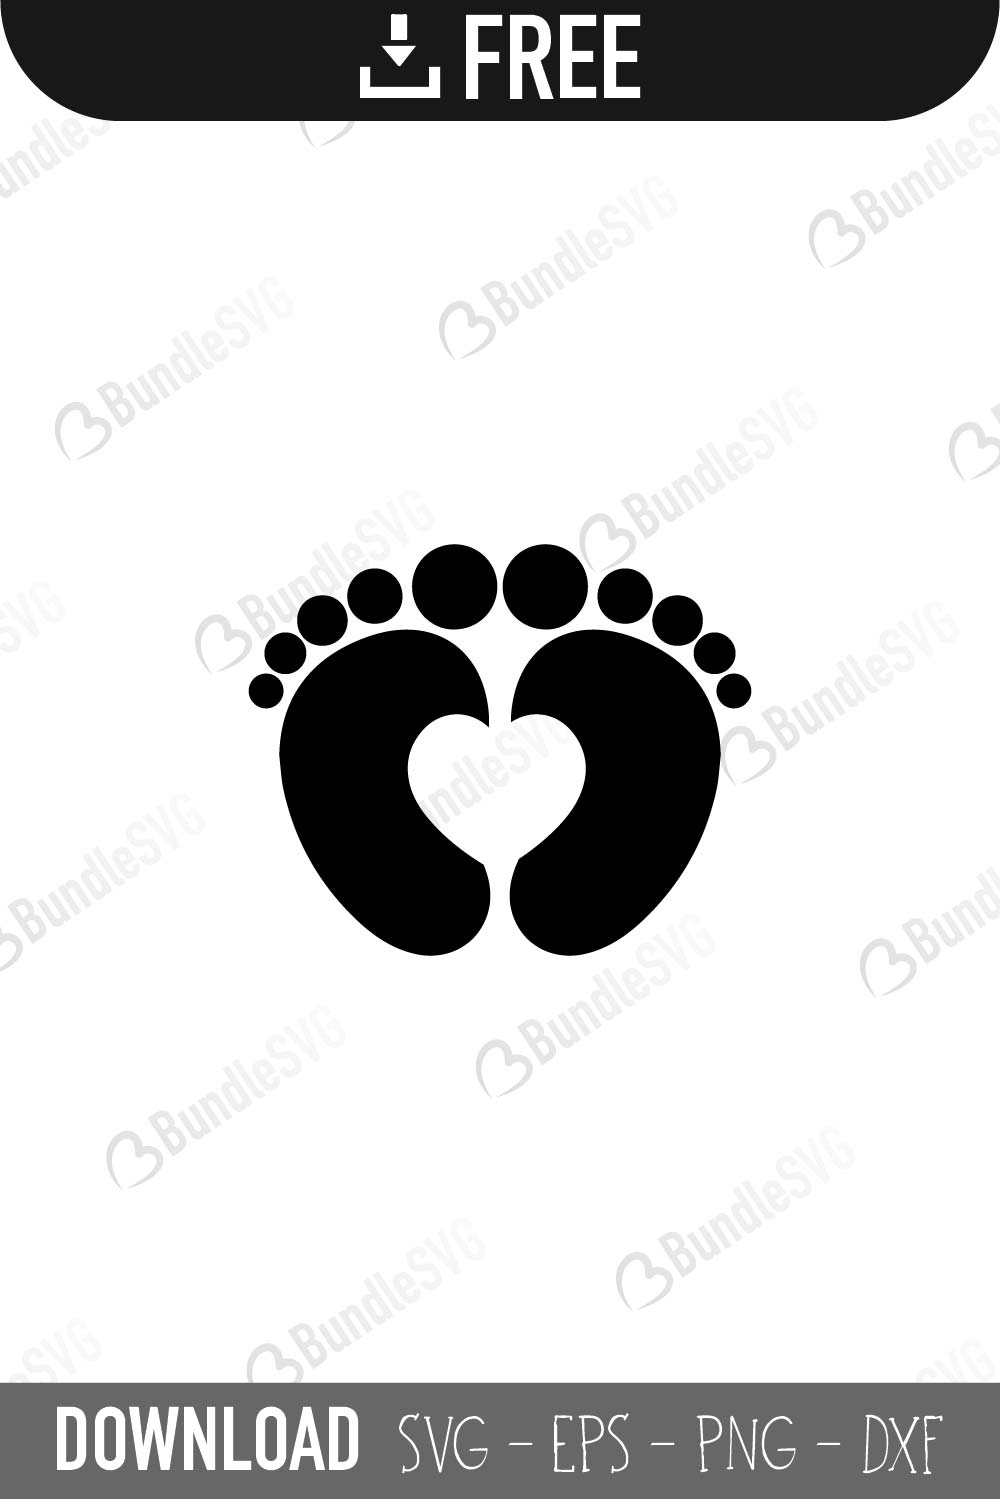 Download Free Baby Feet SVG Cut Files | BundleSVG